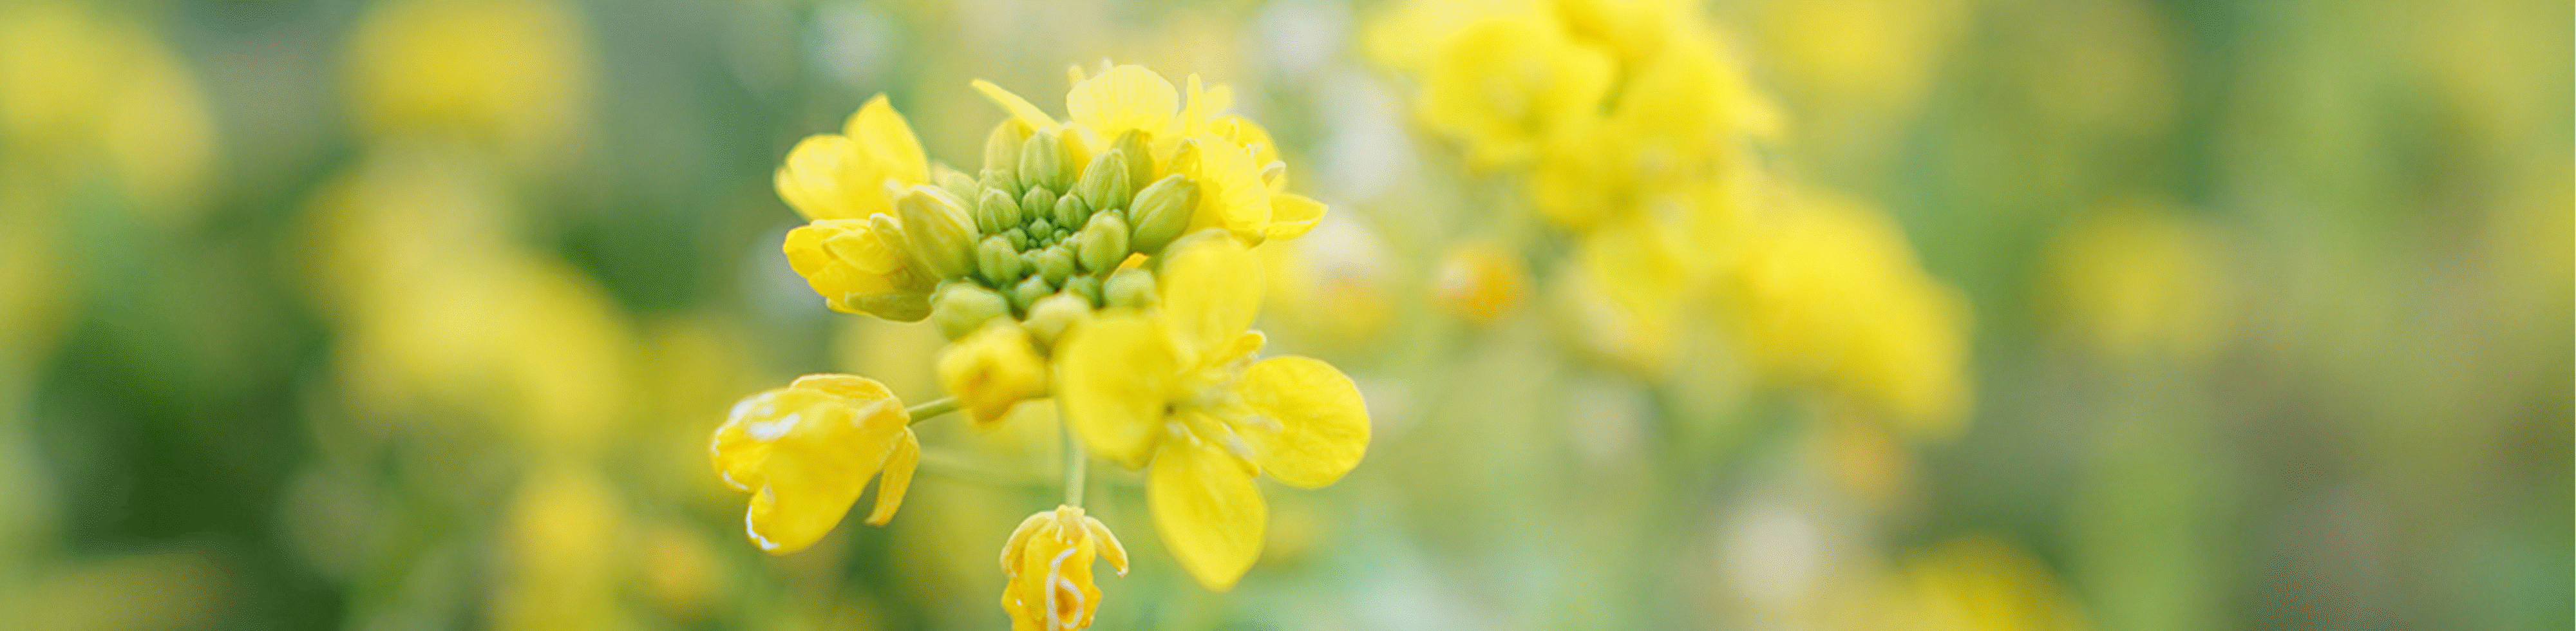 Sarı çiçeklerin görüntüsü